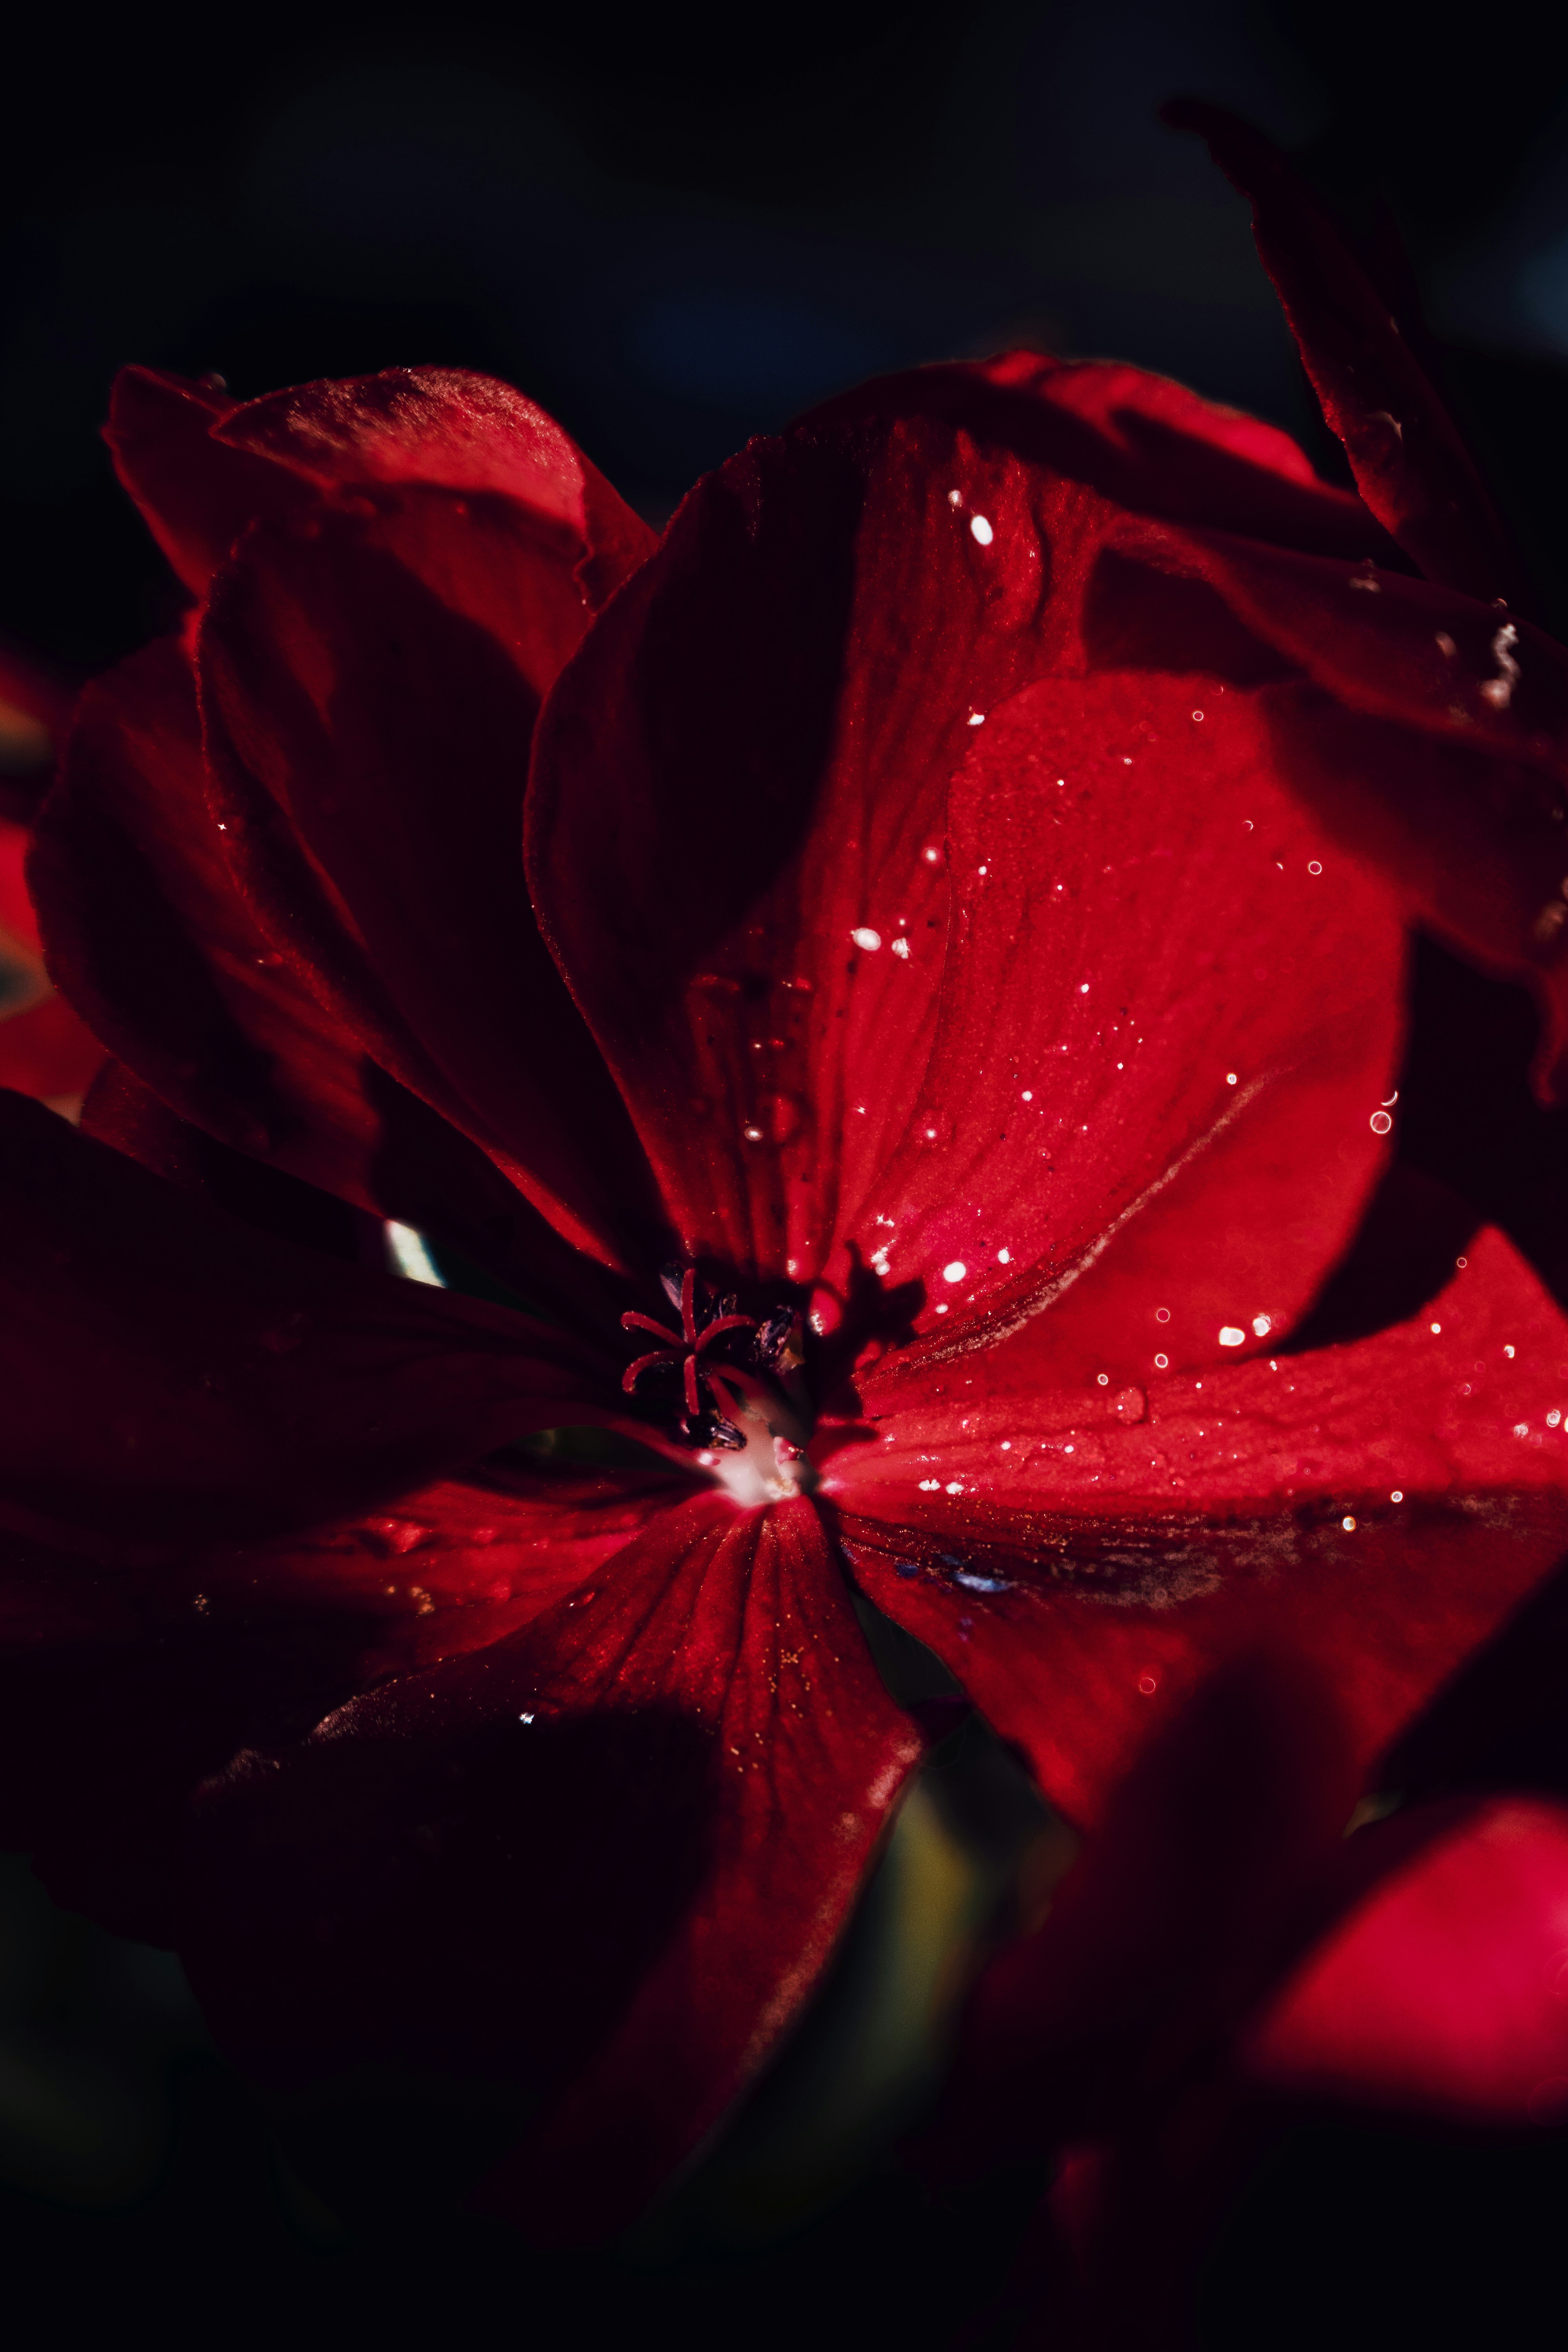 Red geranium flower closeup photo.